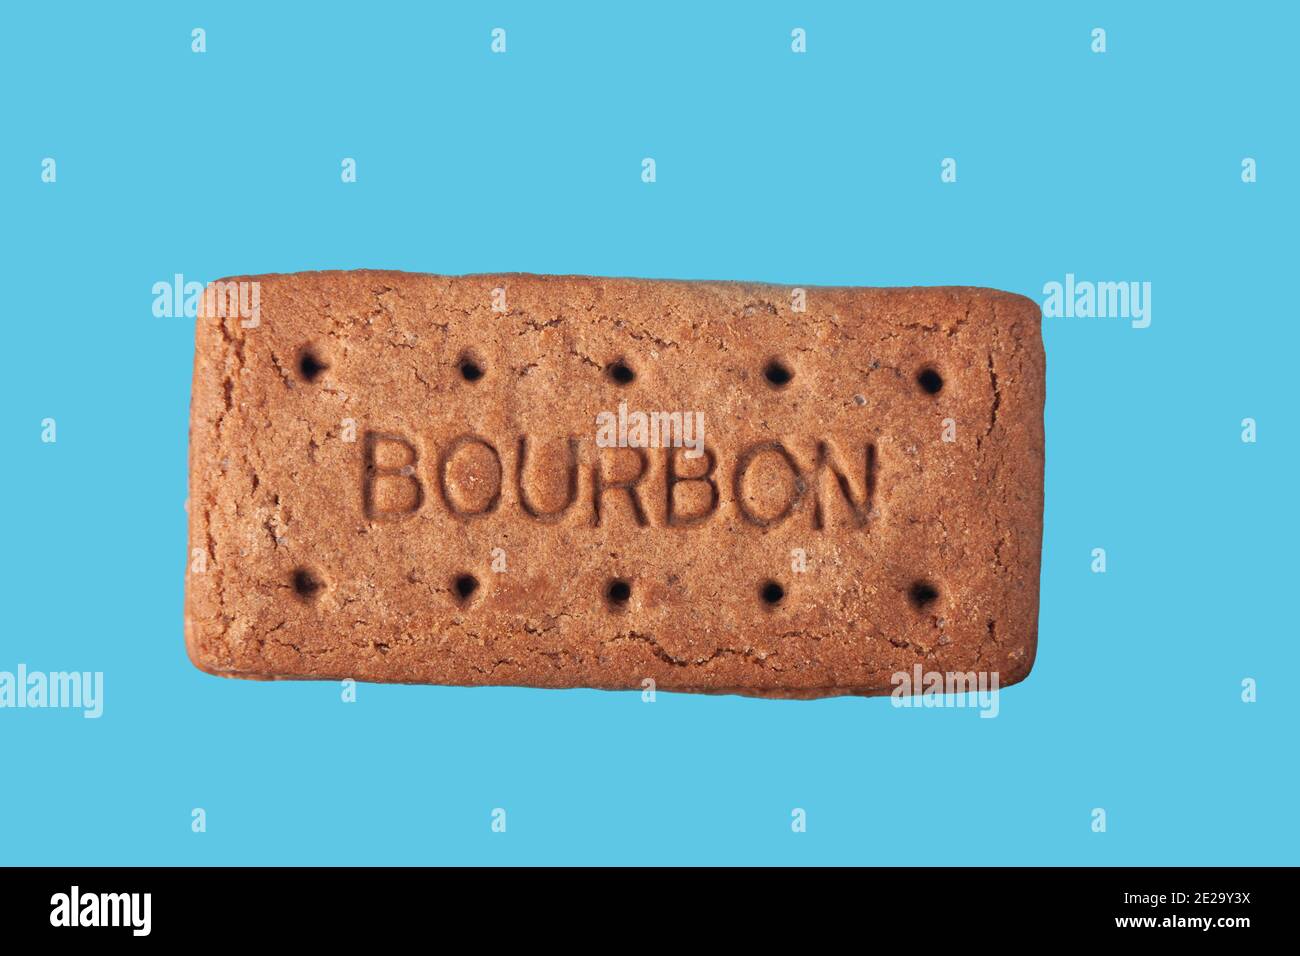 Bourbon Kekse isoliert auf einem blauen Hintergrund Stockfoto